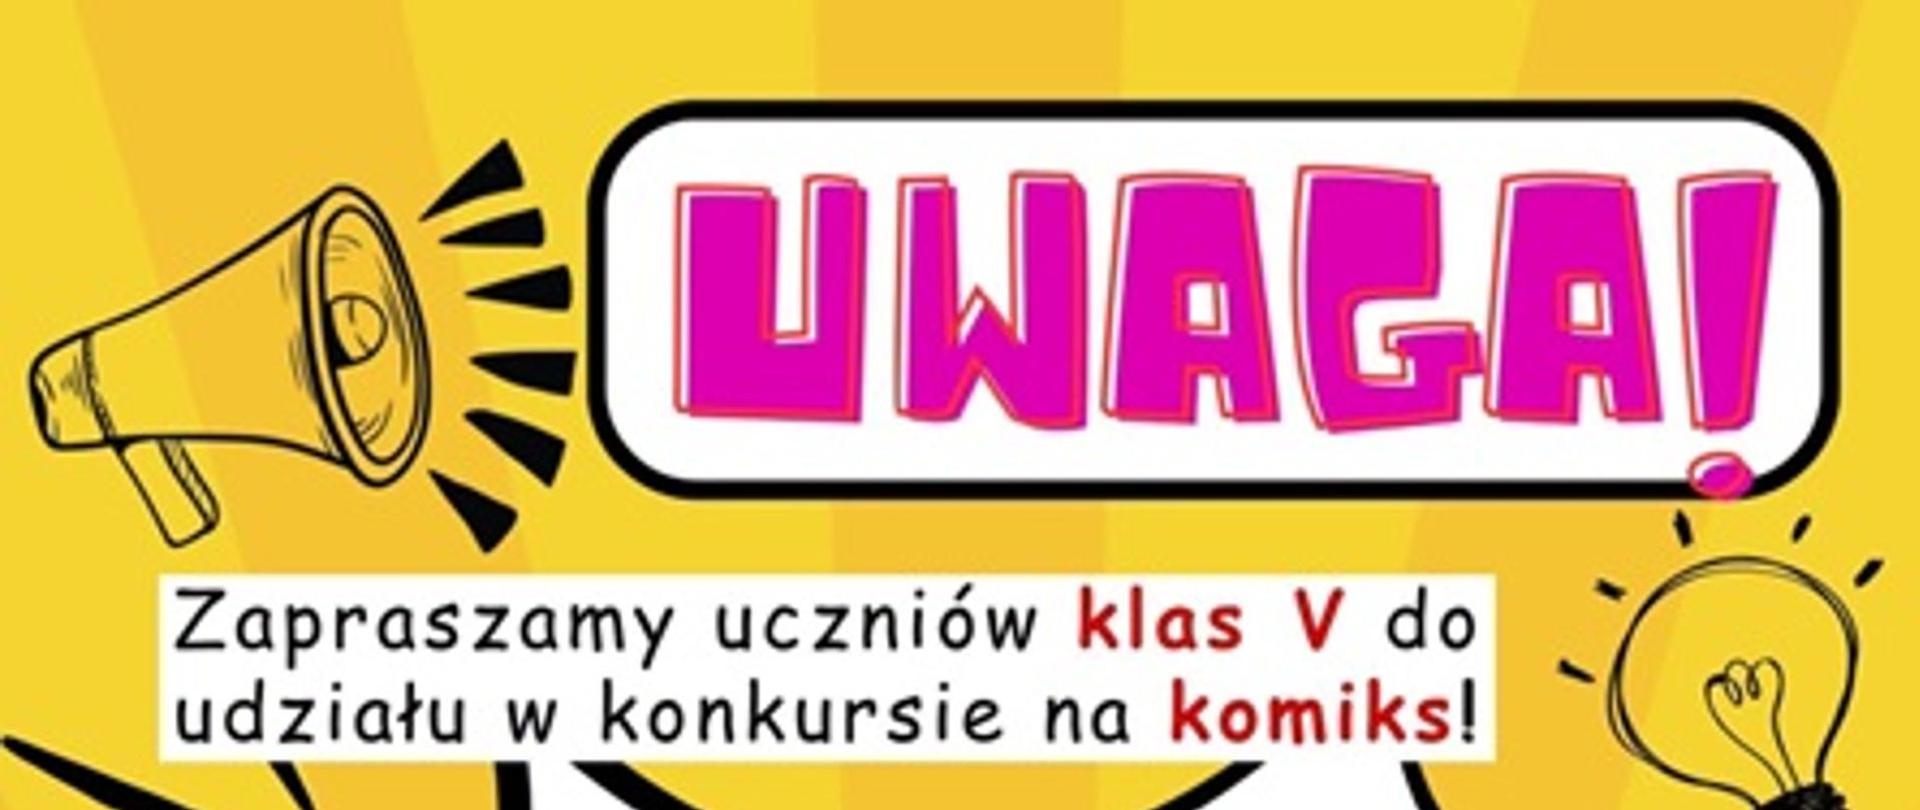 Obraz przedstawia żółty baner z fioletowym napisem UWAGA oraz tekstem Zapraszany uczniów klas V do udziały w konkursie na komiks.